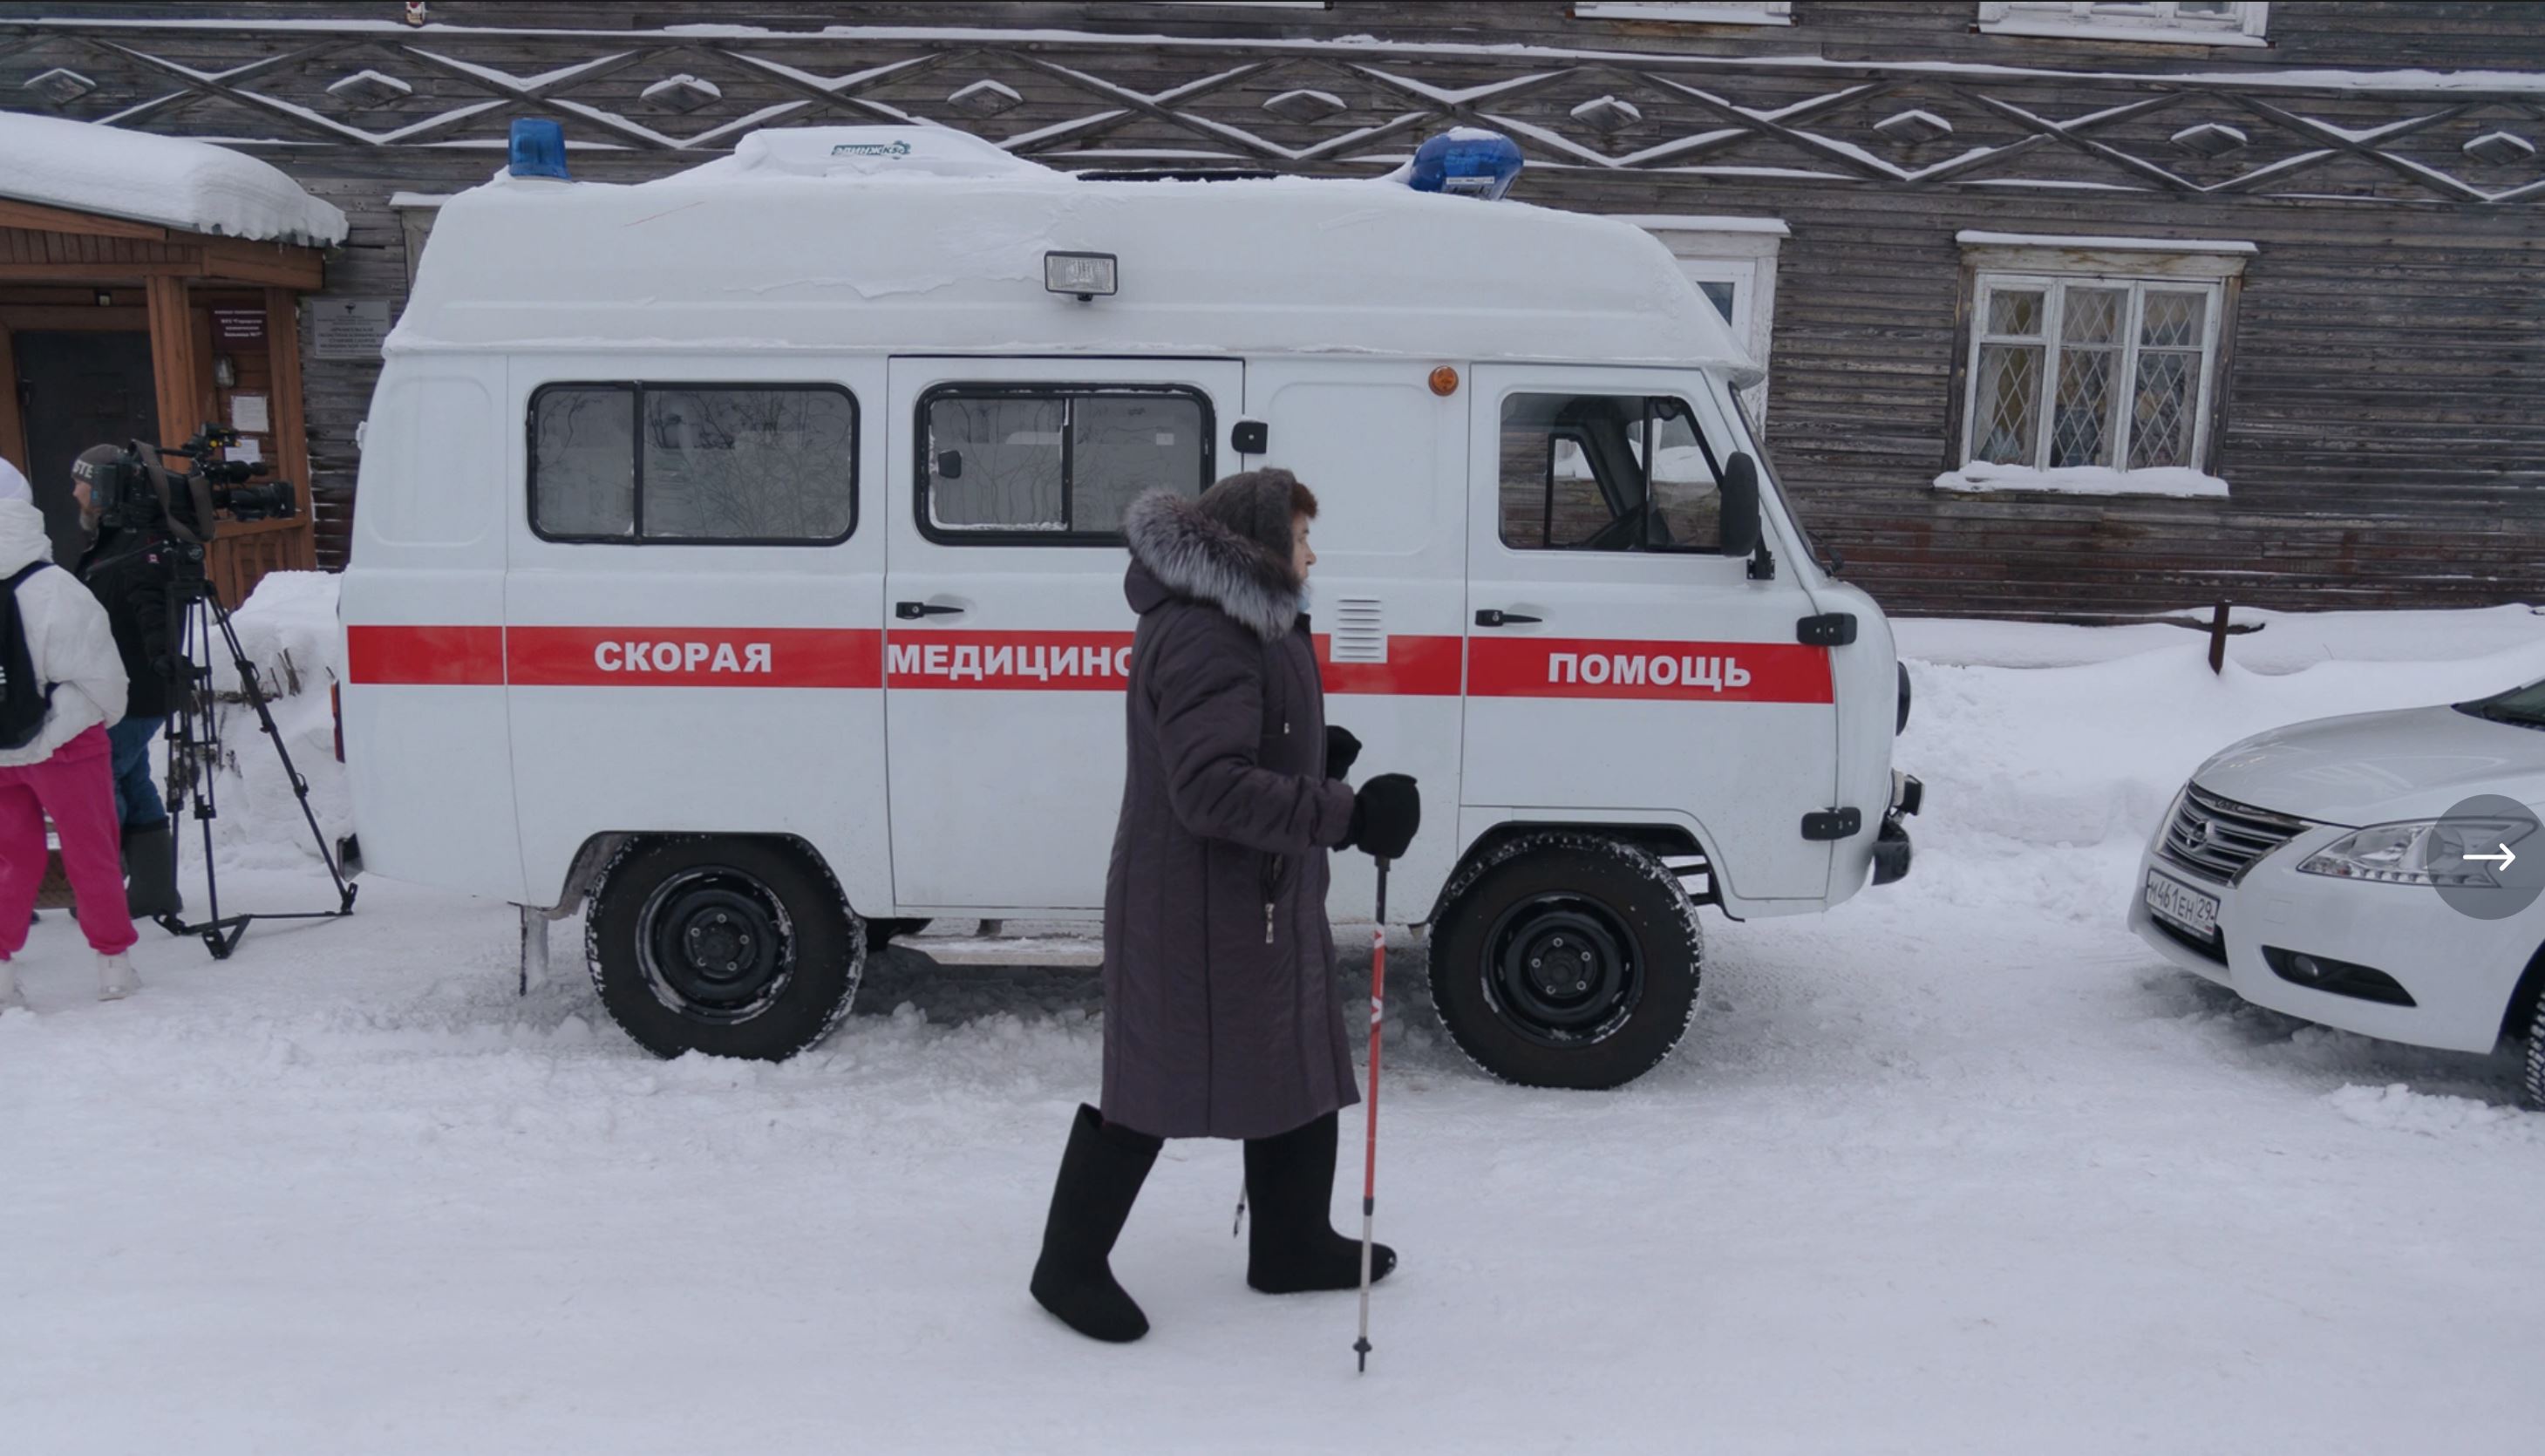 В Архангельской области сотрудники скорой помощи объявили забастовку из-за низких зарплат, вопреки указам Путина